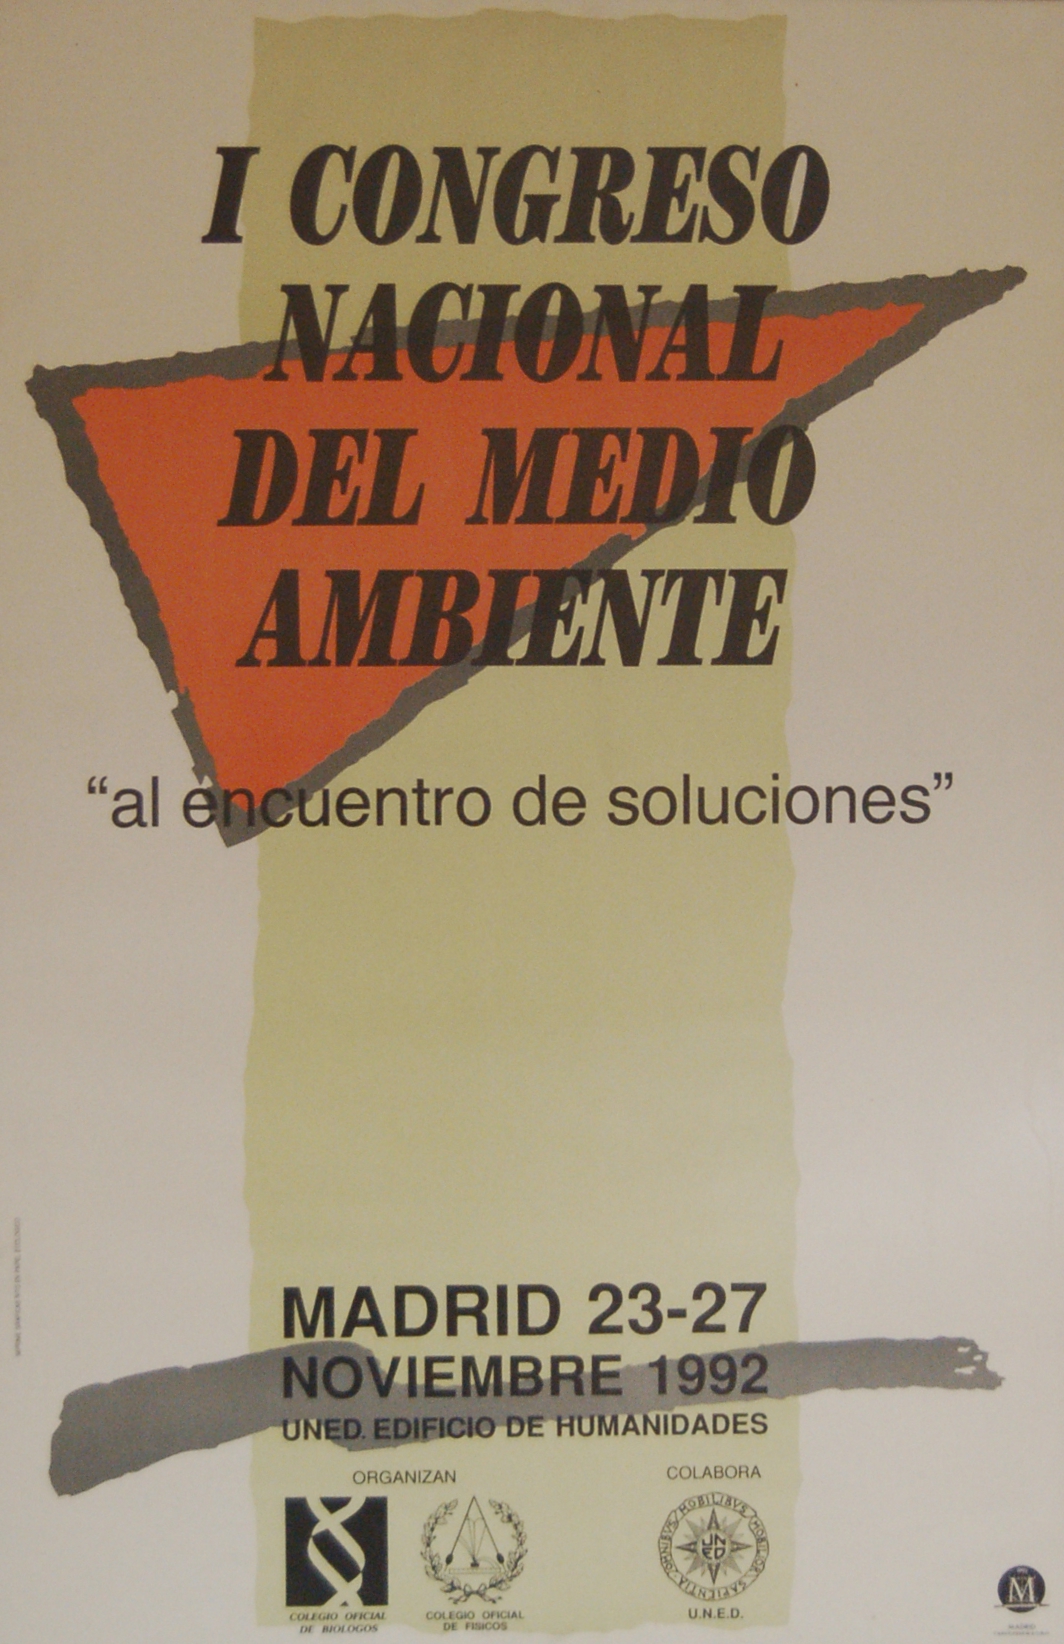 1992: I Congreso Nacional del Medio Ambiente